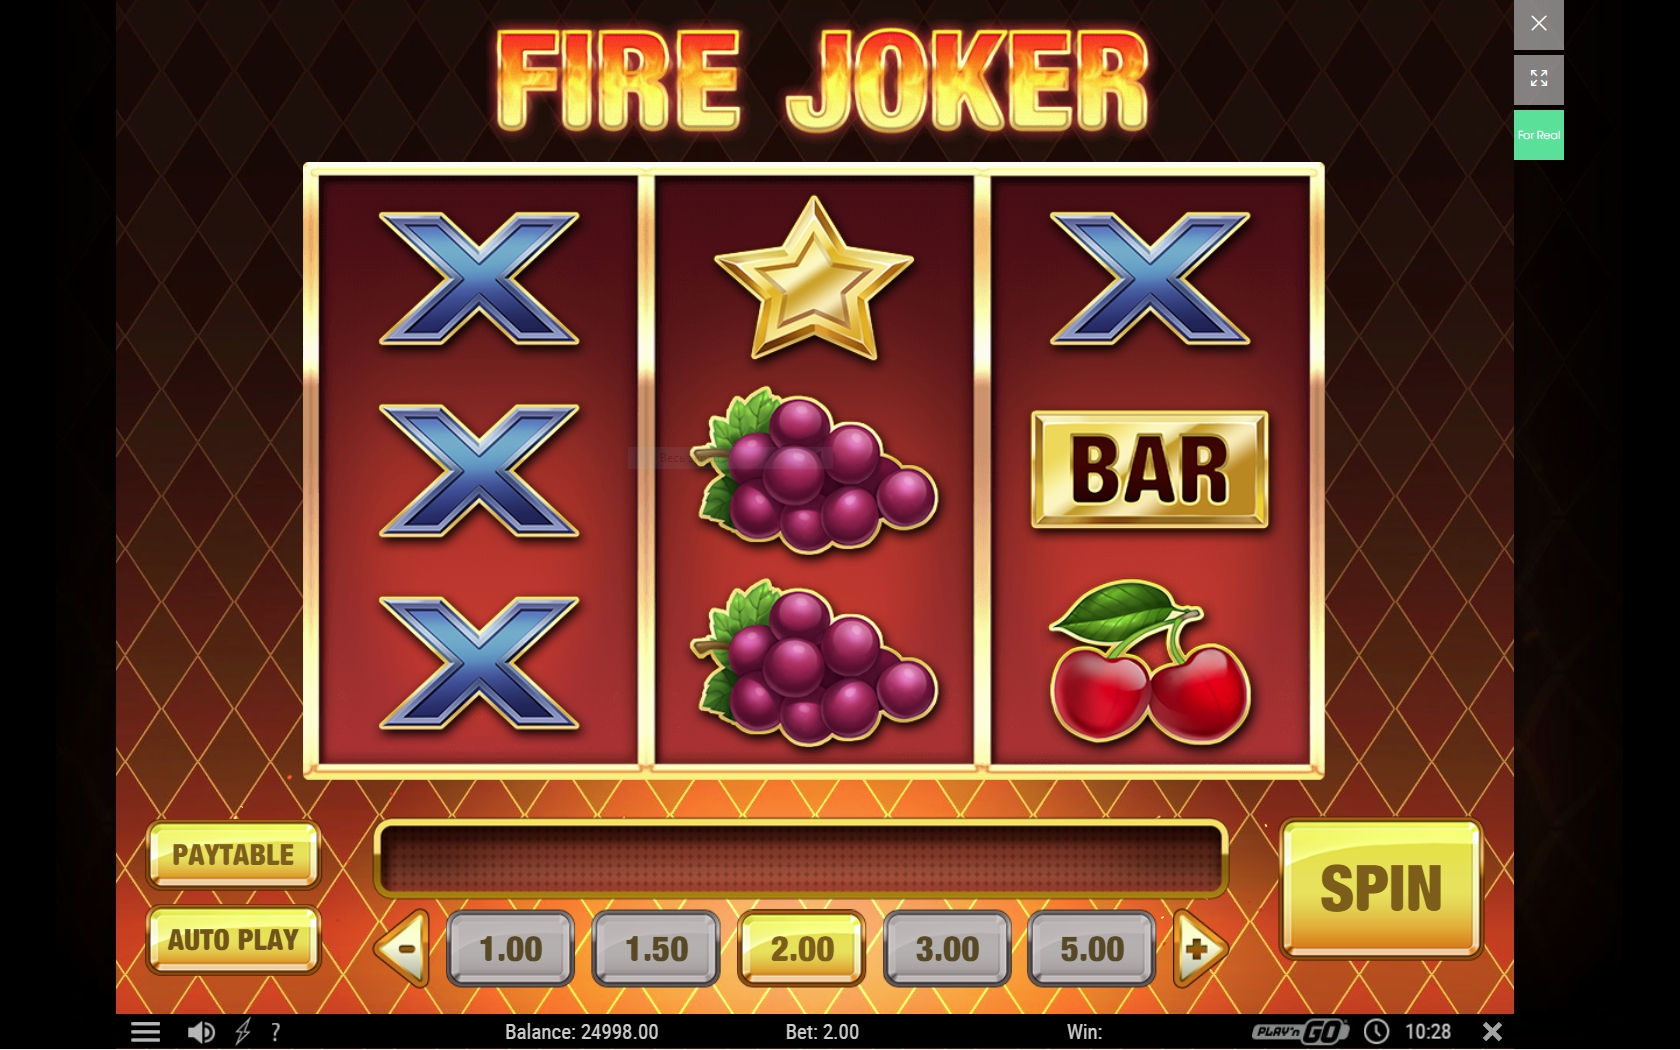 casino online monopoly